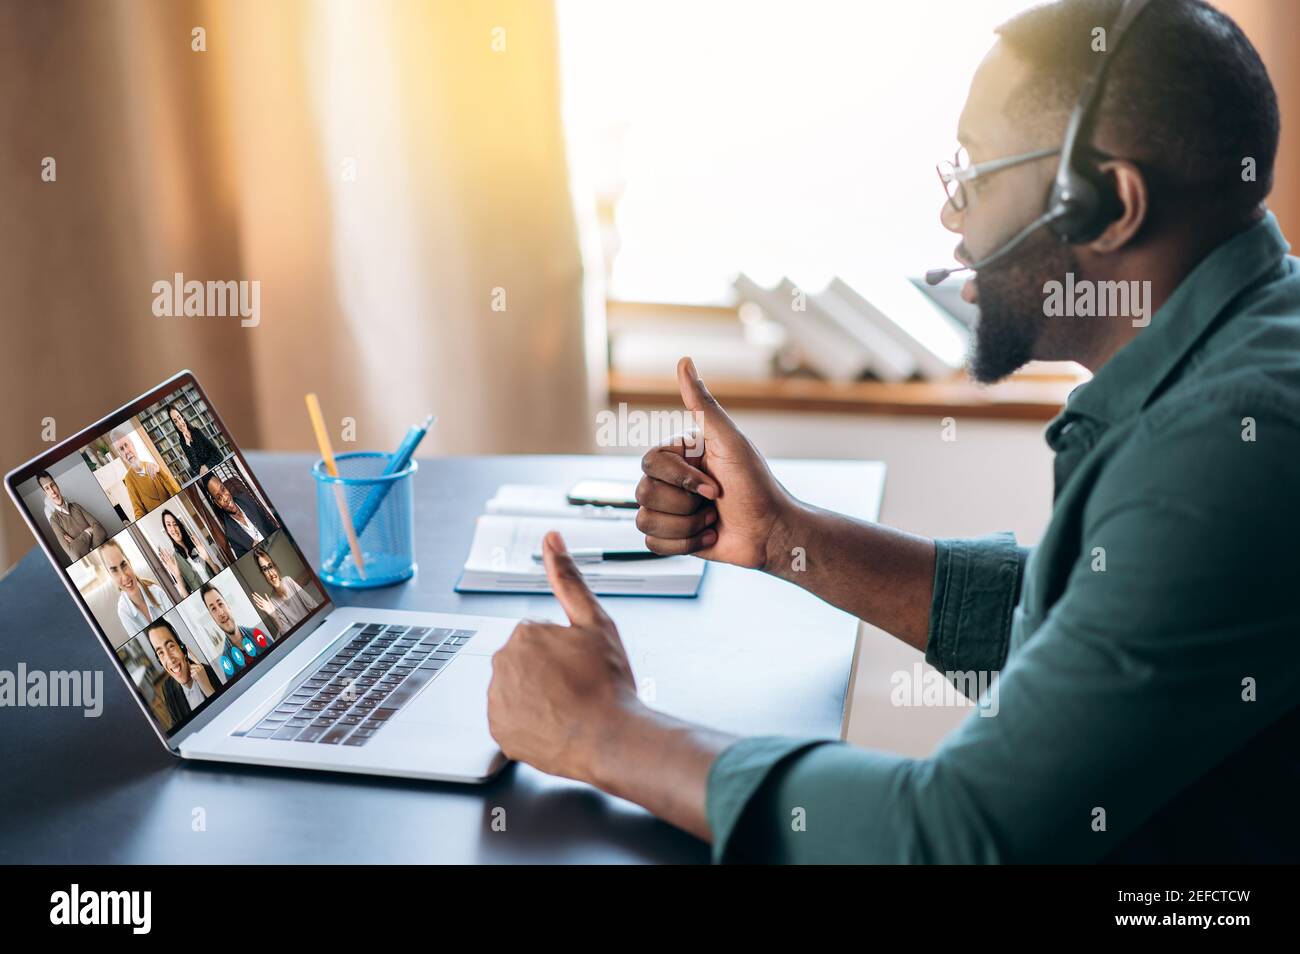 L'uomo afro-americano di successo utilizza un'applicazione per la comunicazione video online con i colleghi utilizzando un laptop, meeting online tramite videoconferenza. Brainstorming di gruppo, webinar, lezione online Foto Stock